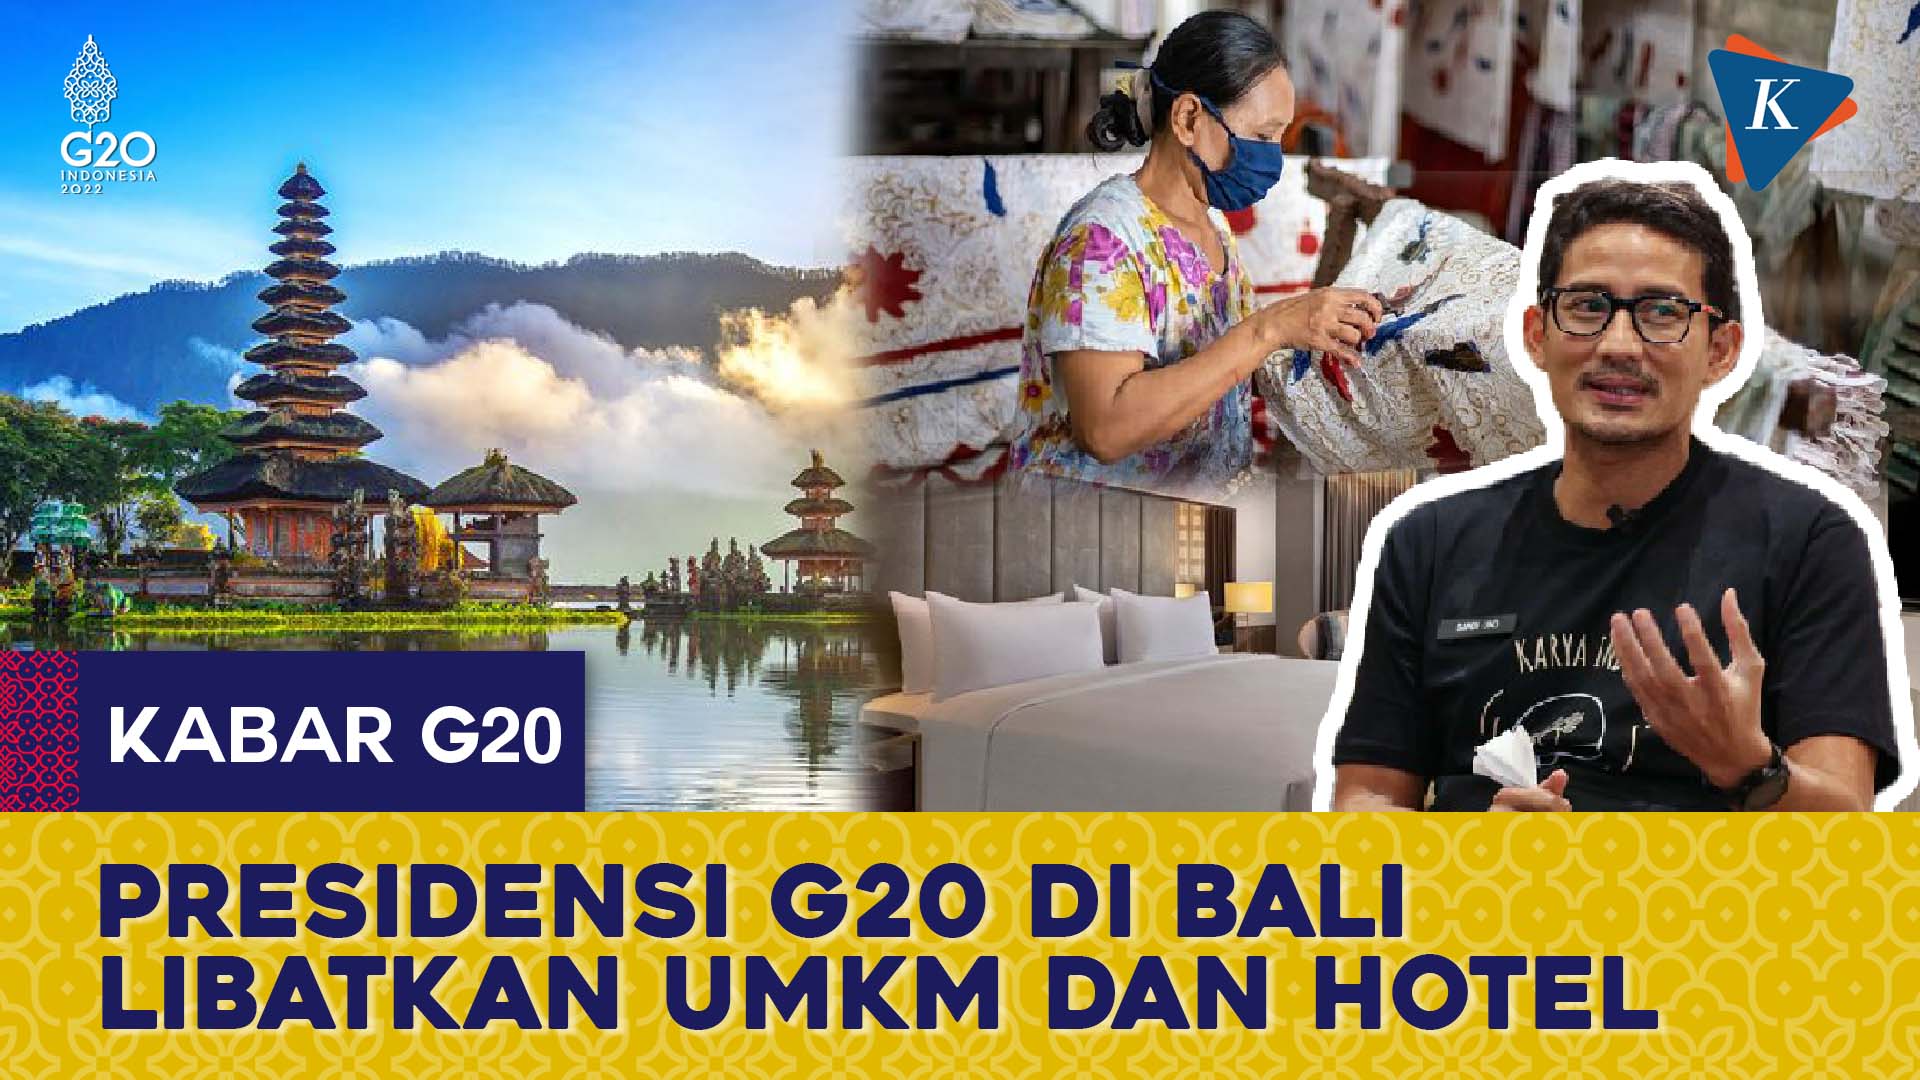 Menparekraf Sebut Akan Ada 100 UMKM dan 40 Hotel di Presidensi G20 Bali